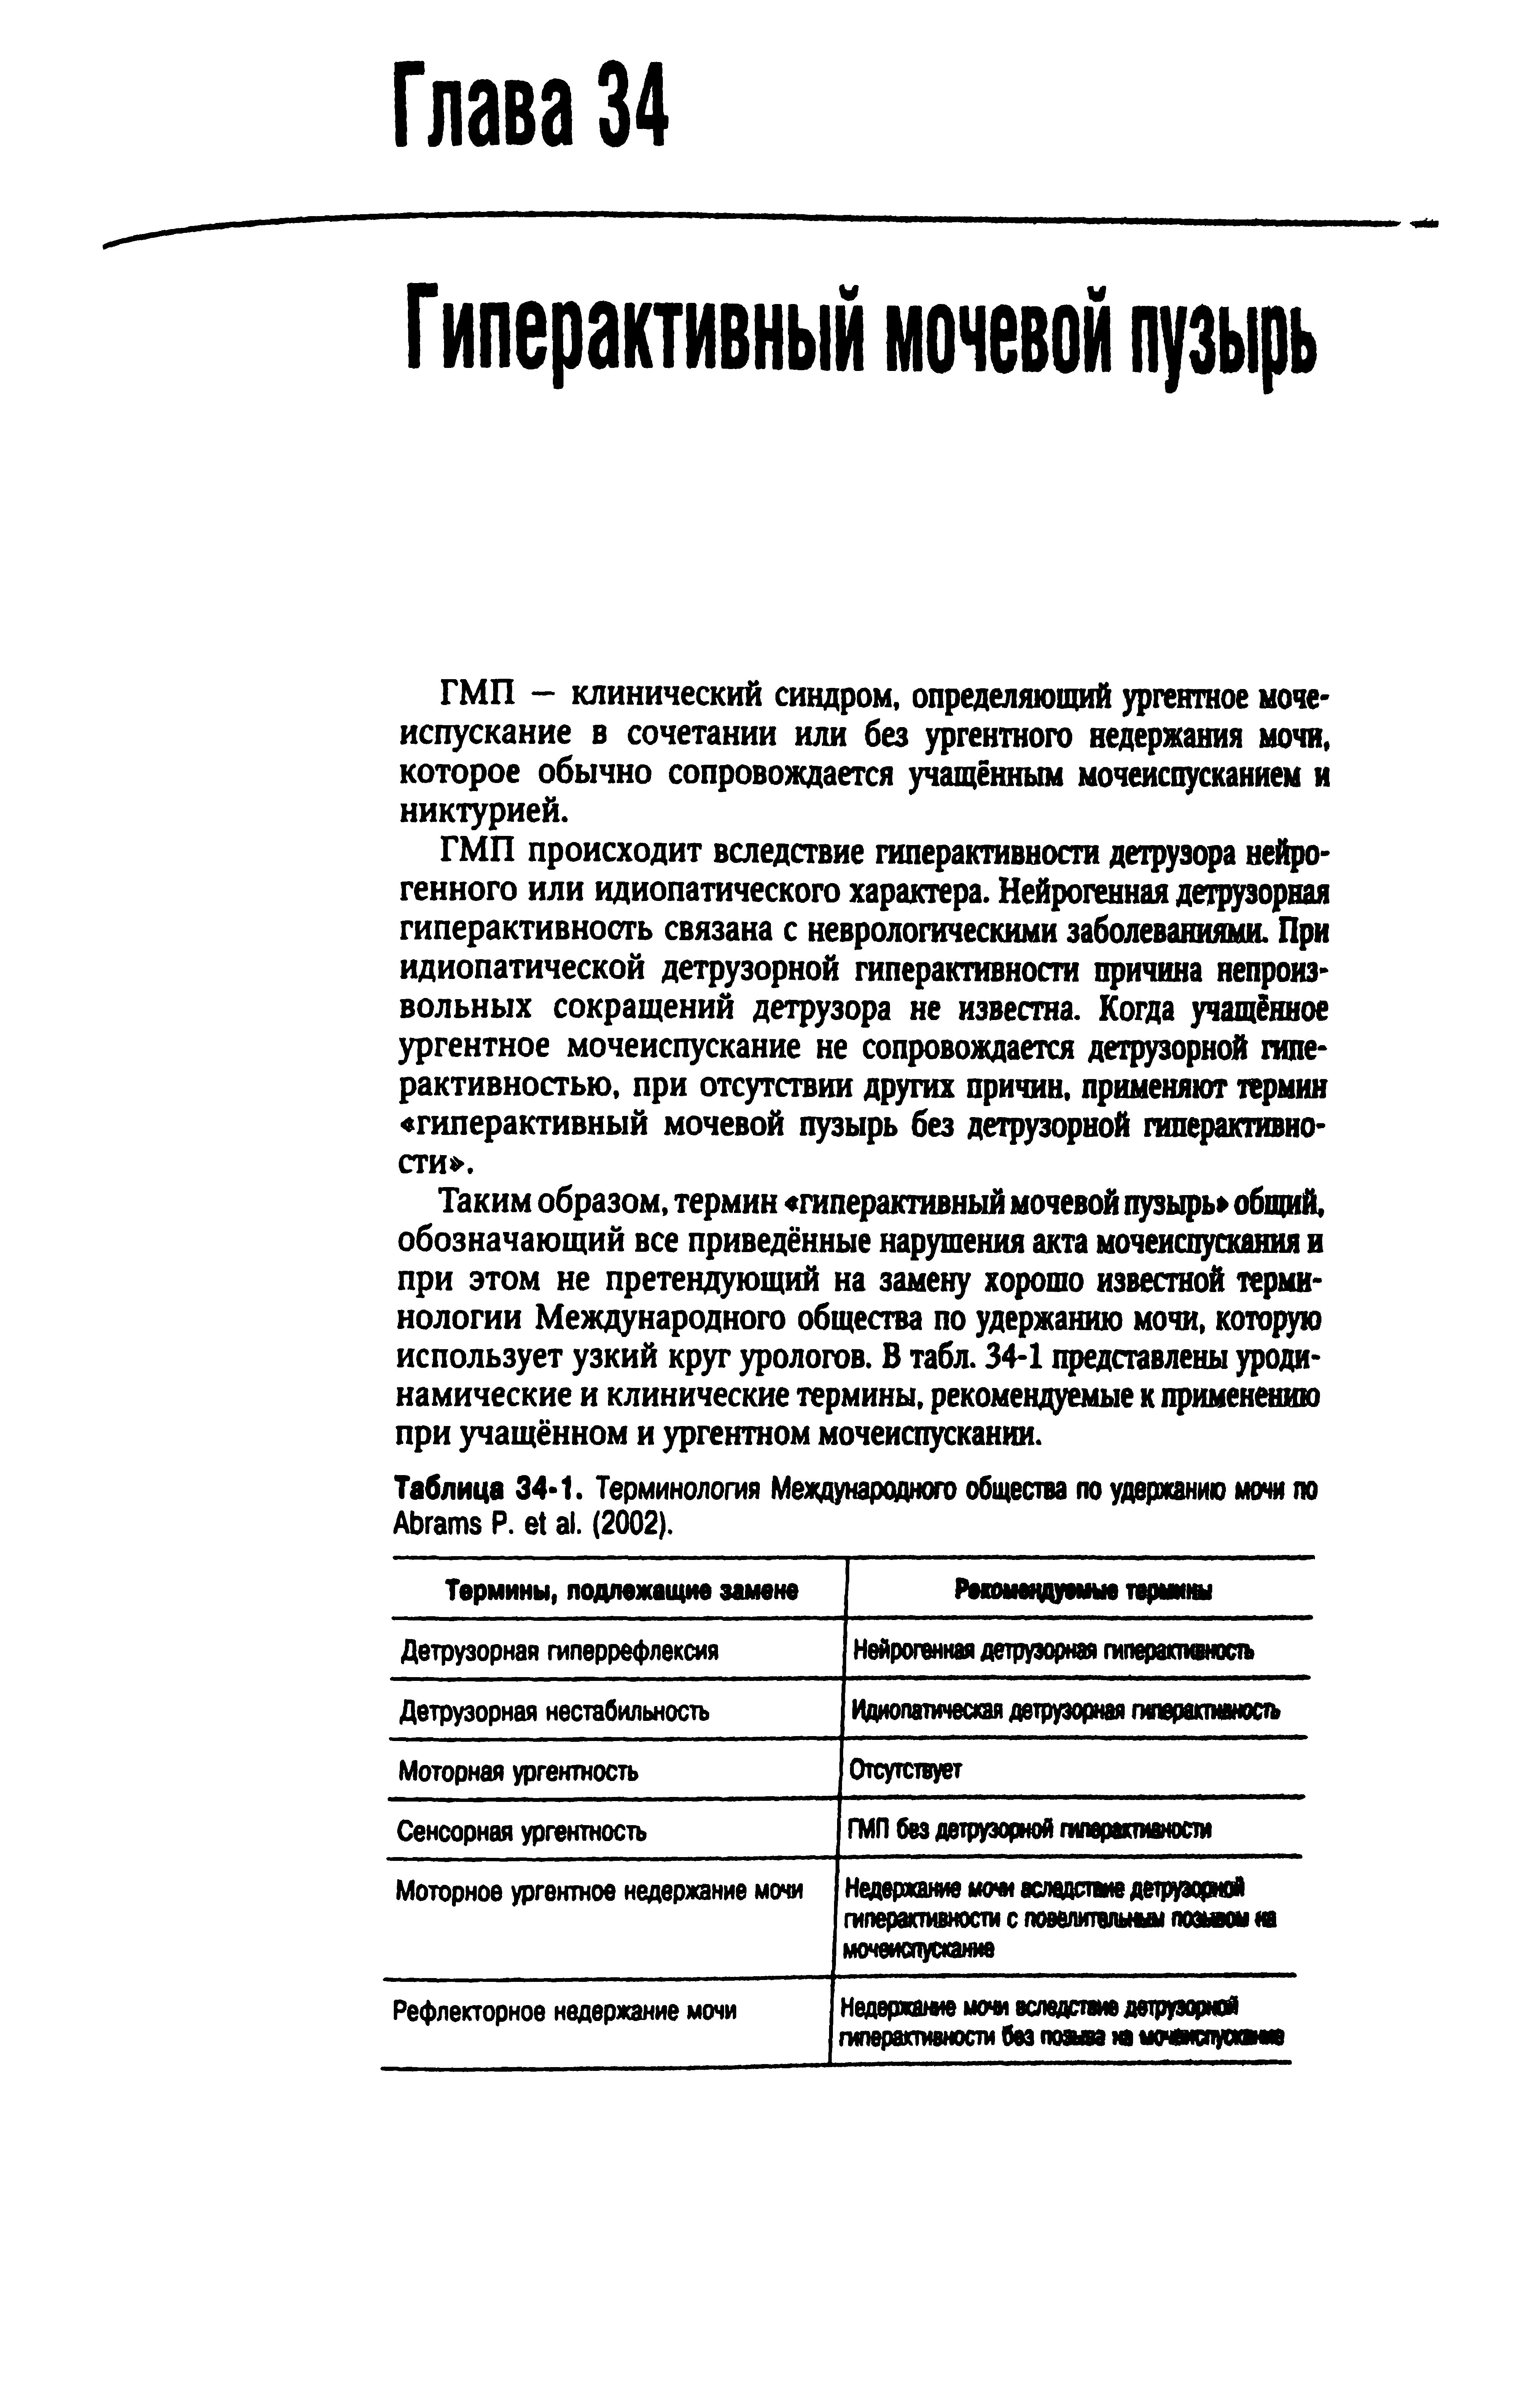 Таблица 34-1. Терминология Международного общества по удержанию мочи по A Р. . (2002).